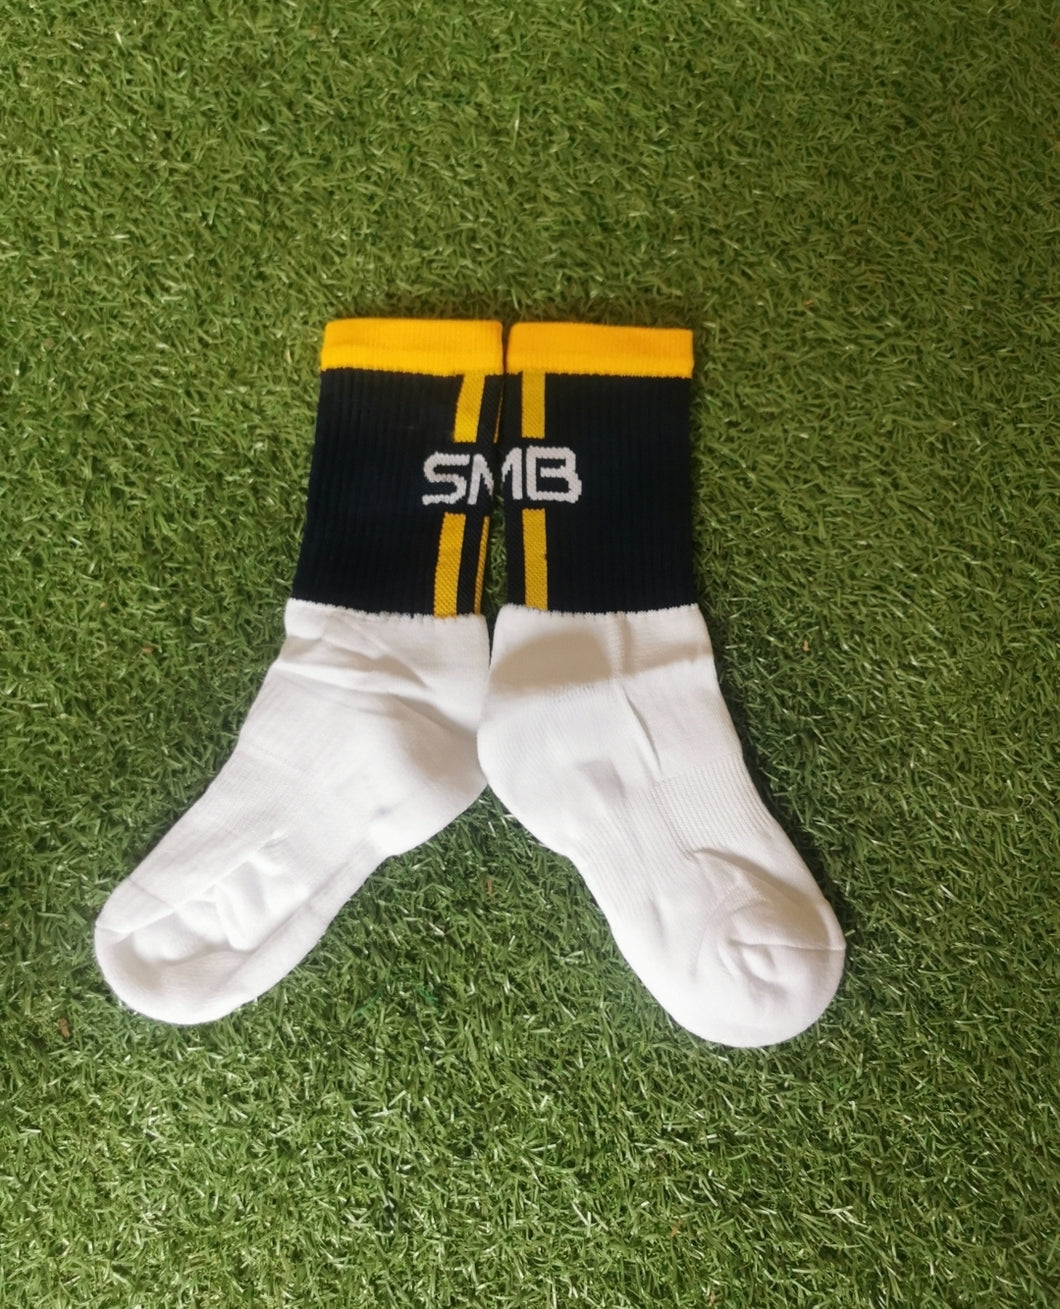 SMB Socks